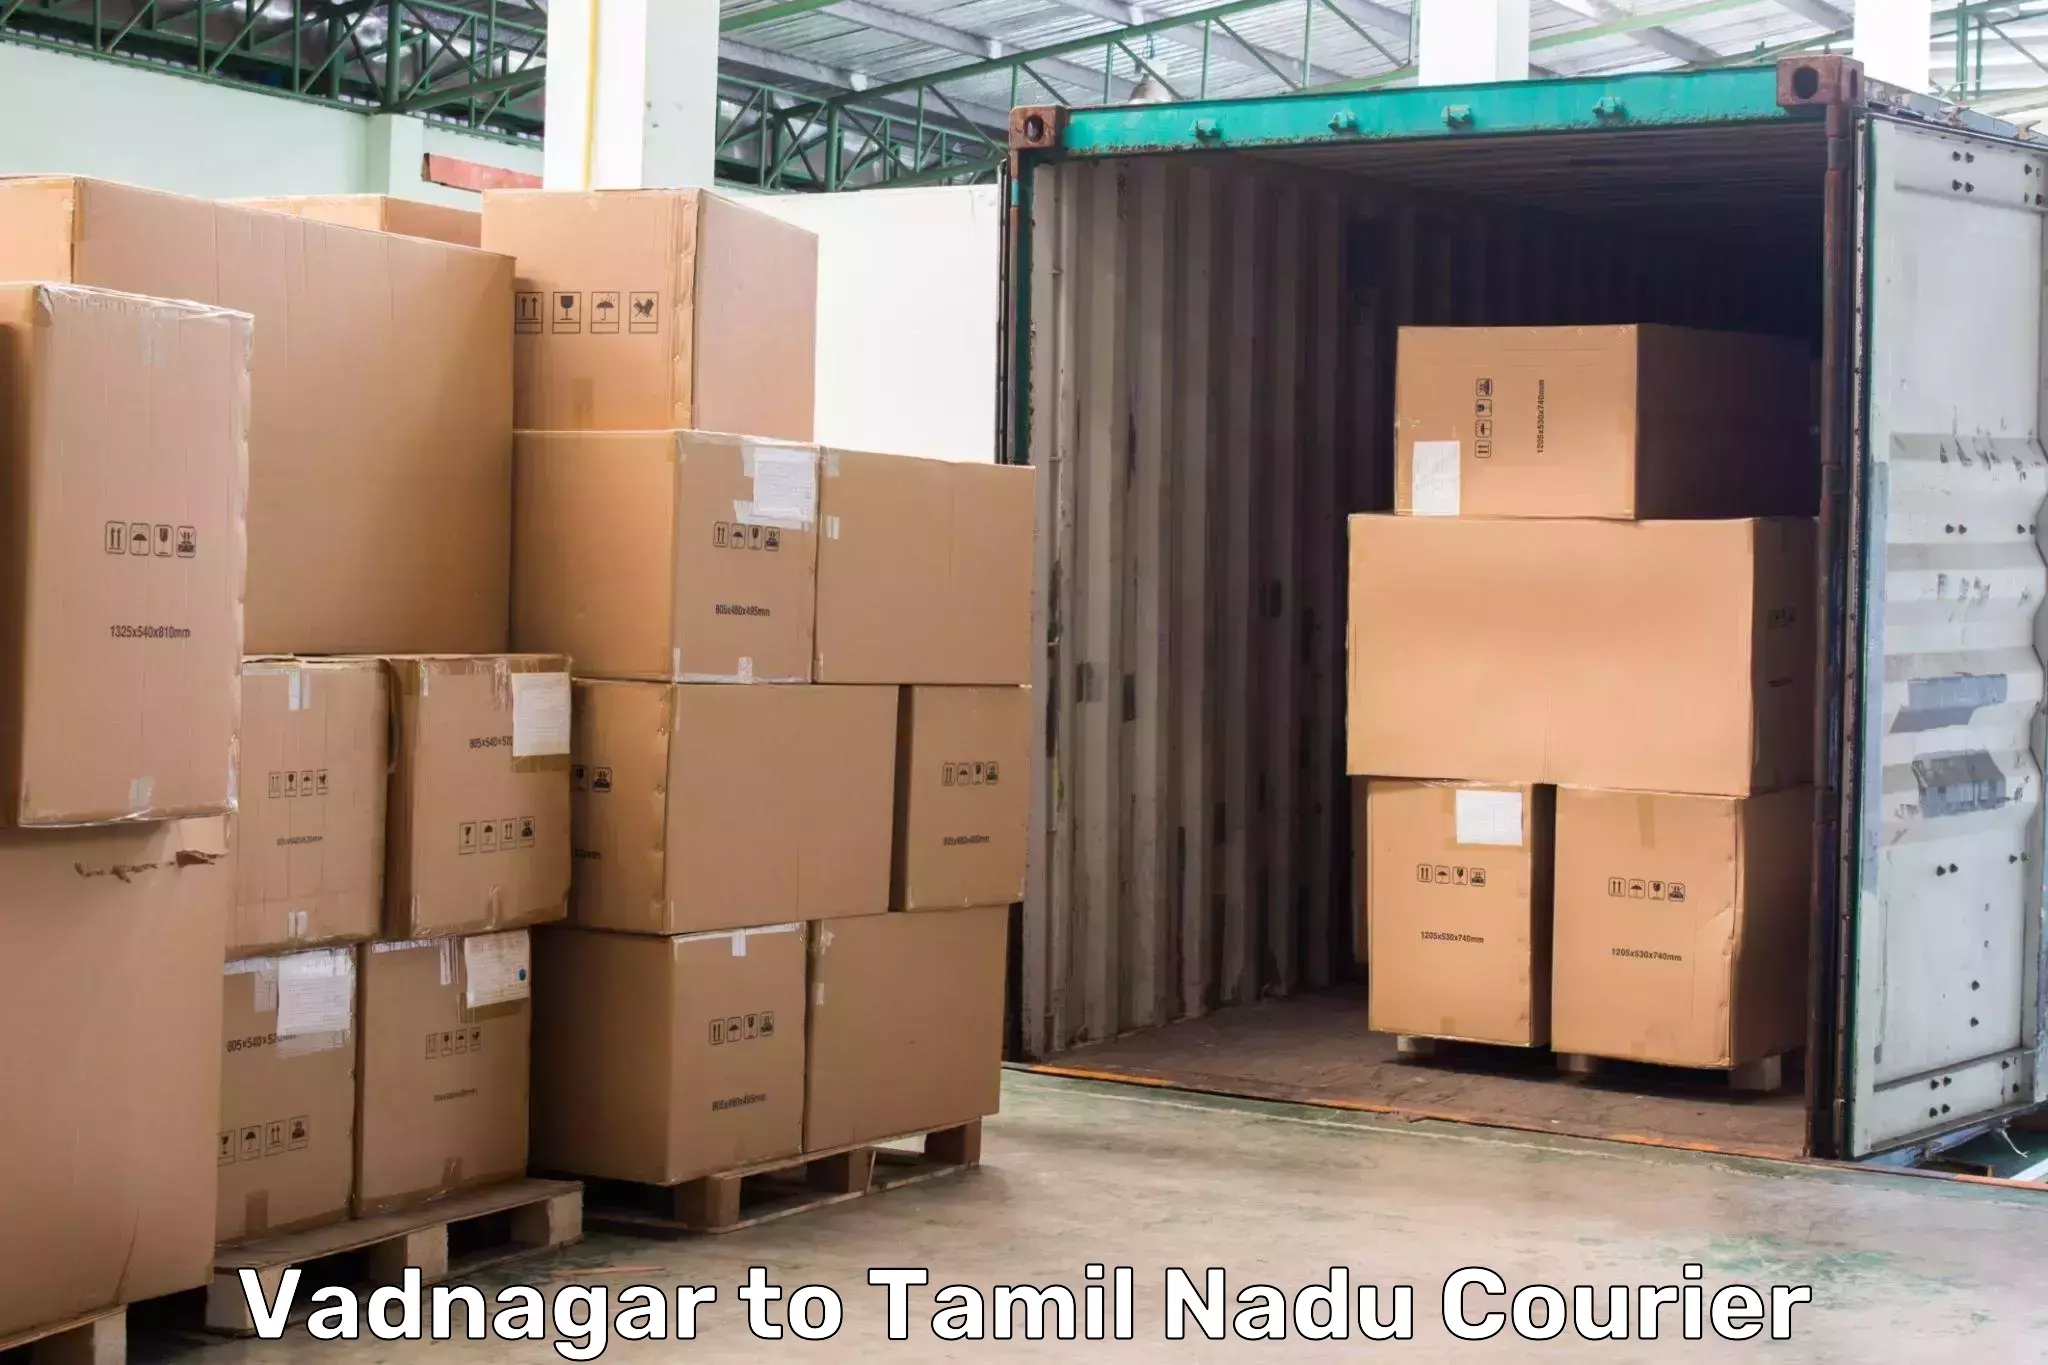 Reliable courier service Vadnagar to Rasipuram